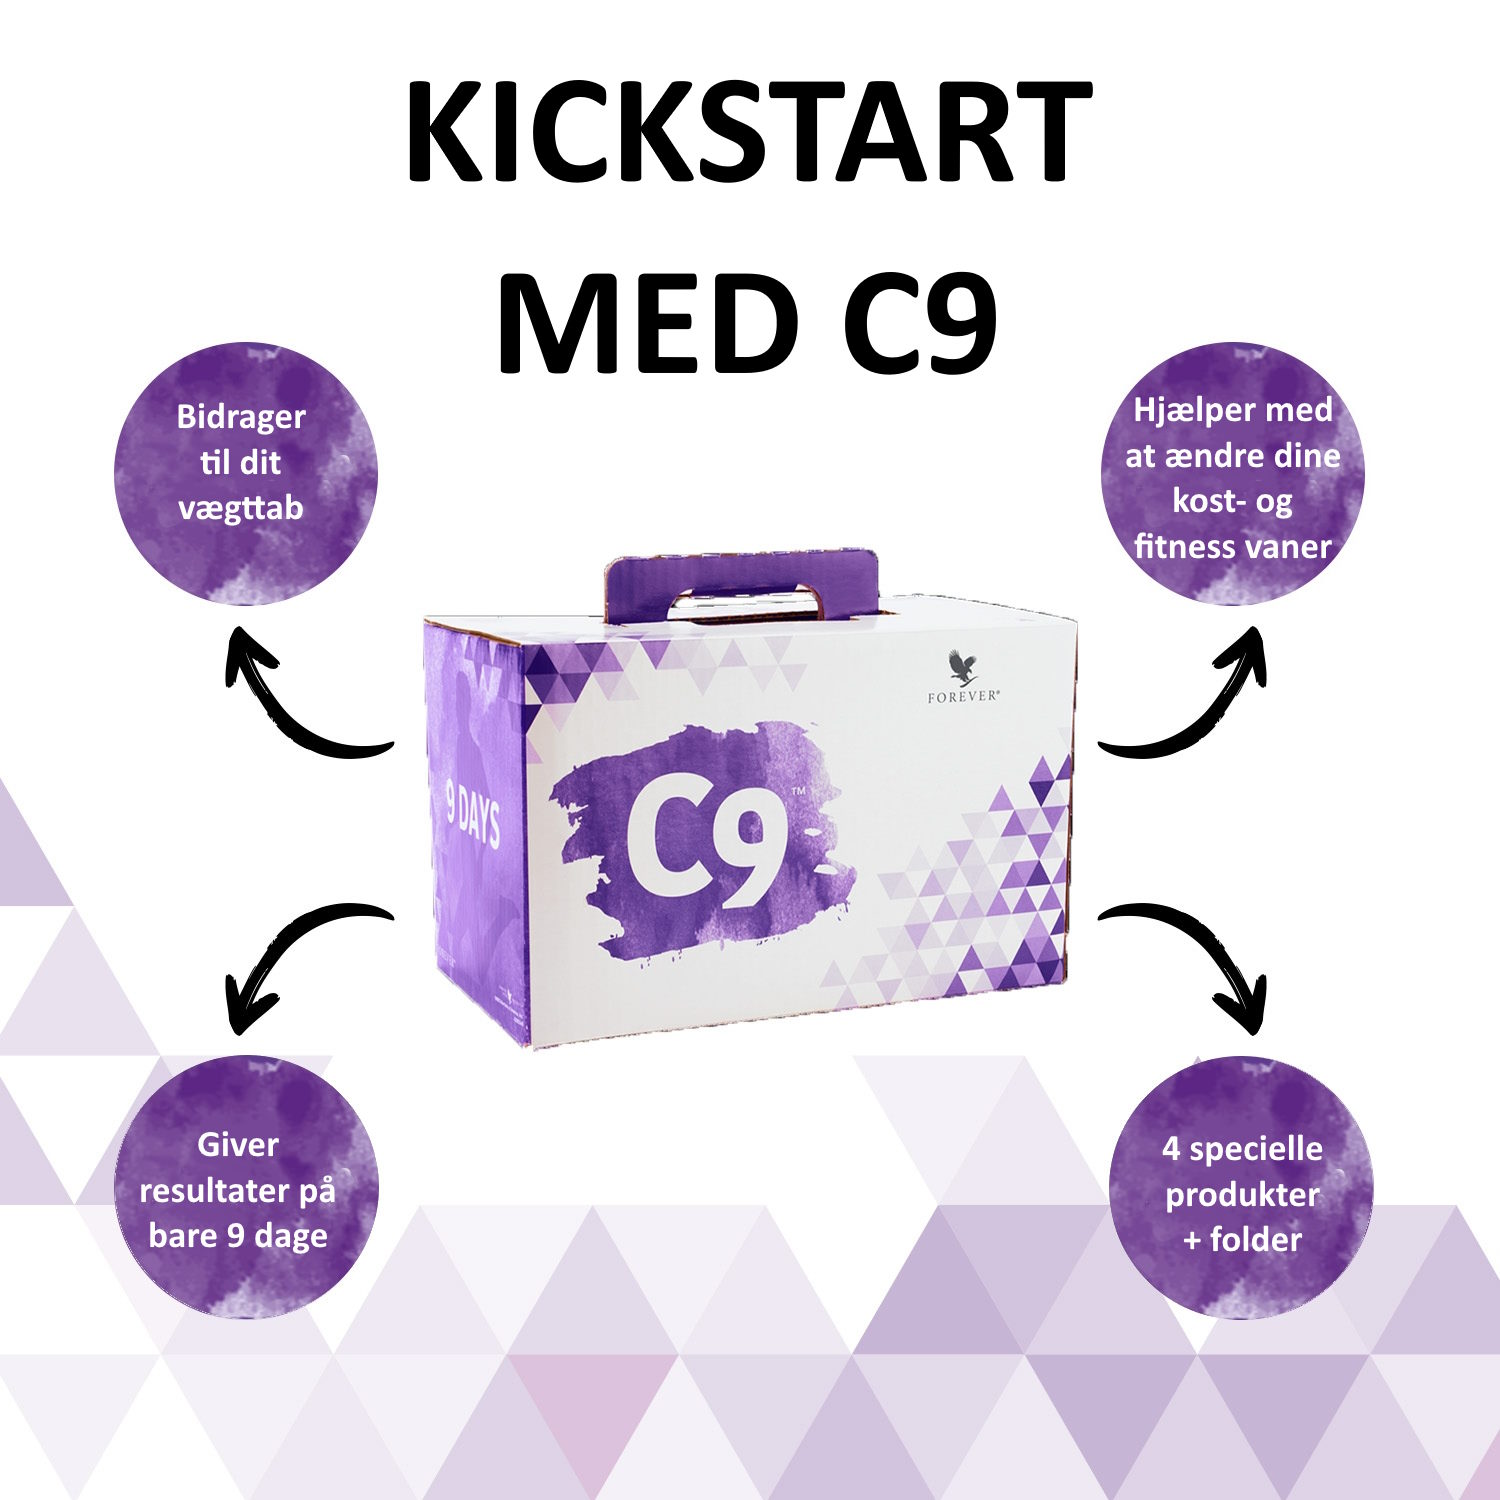 kickstart din sundhed med C9 fra studioaloe